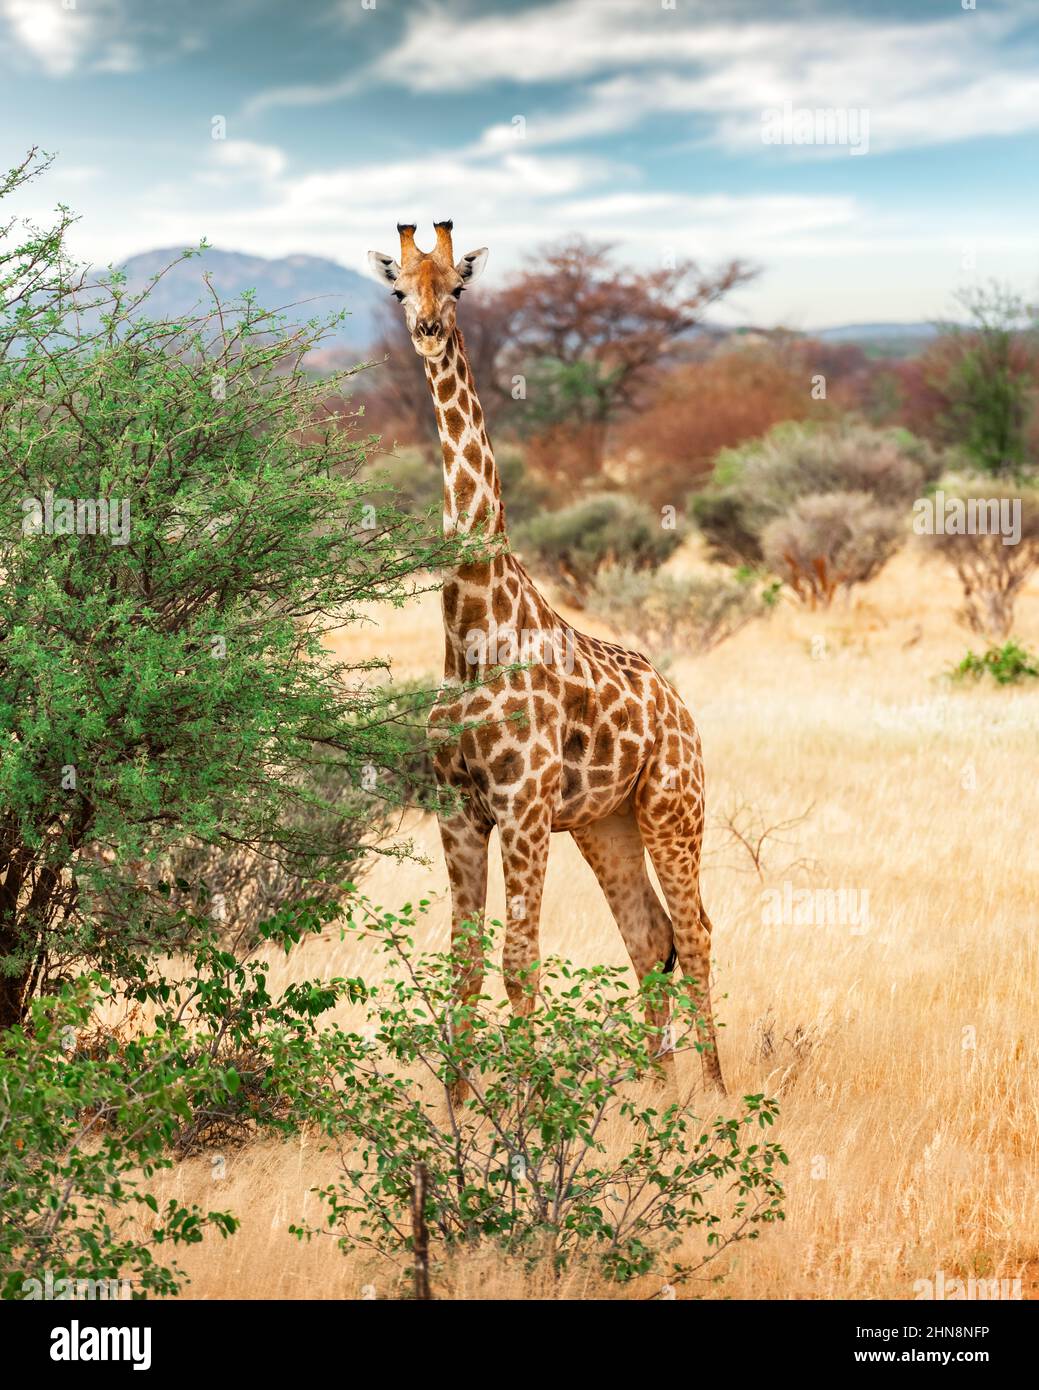 Junge Giraffe bei einem Spaziergang im afrikanischen Busch im Etosha National Park, Namibia, Afrika. Wildtierfotografie Stockfoto